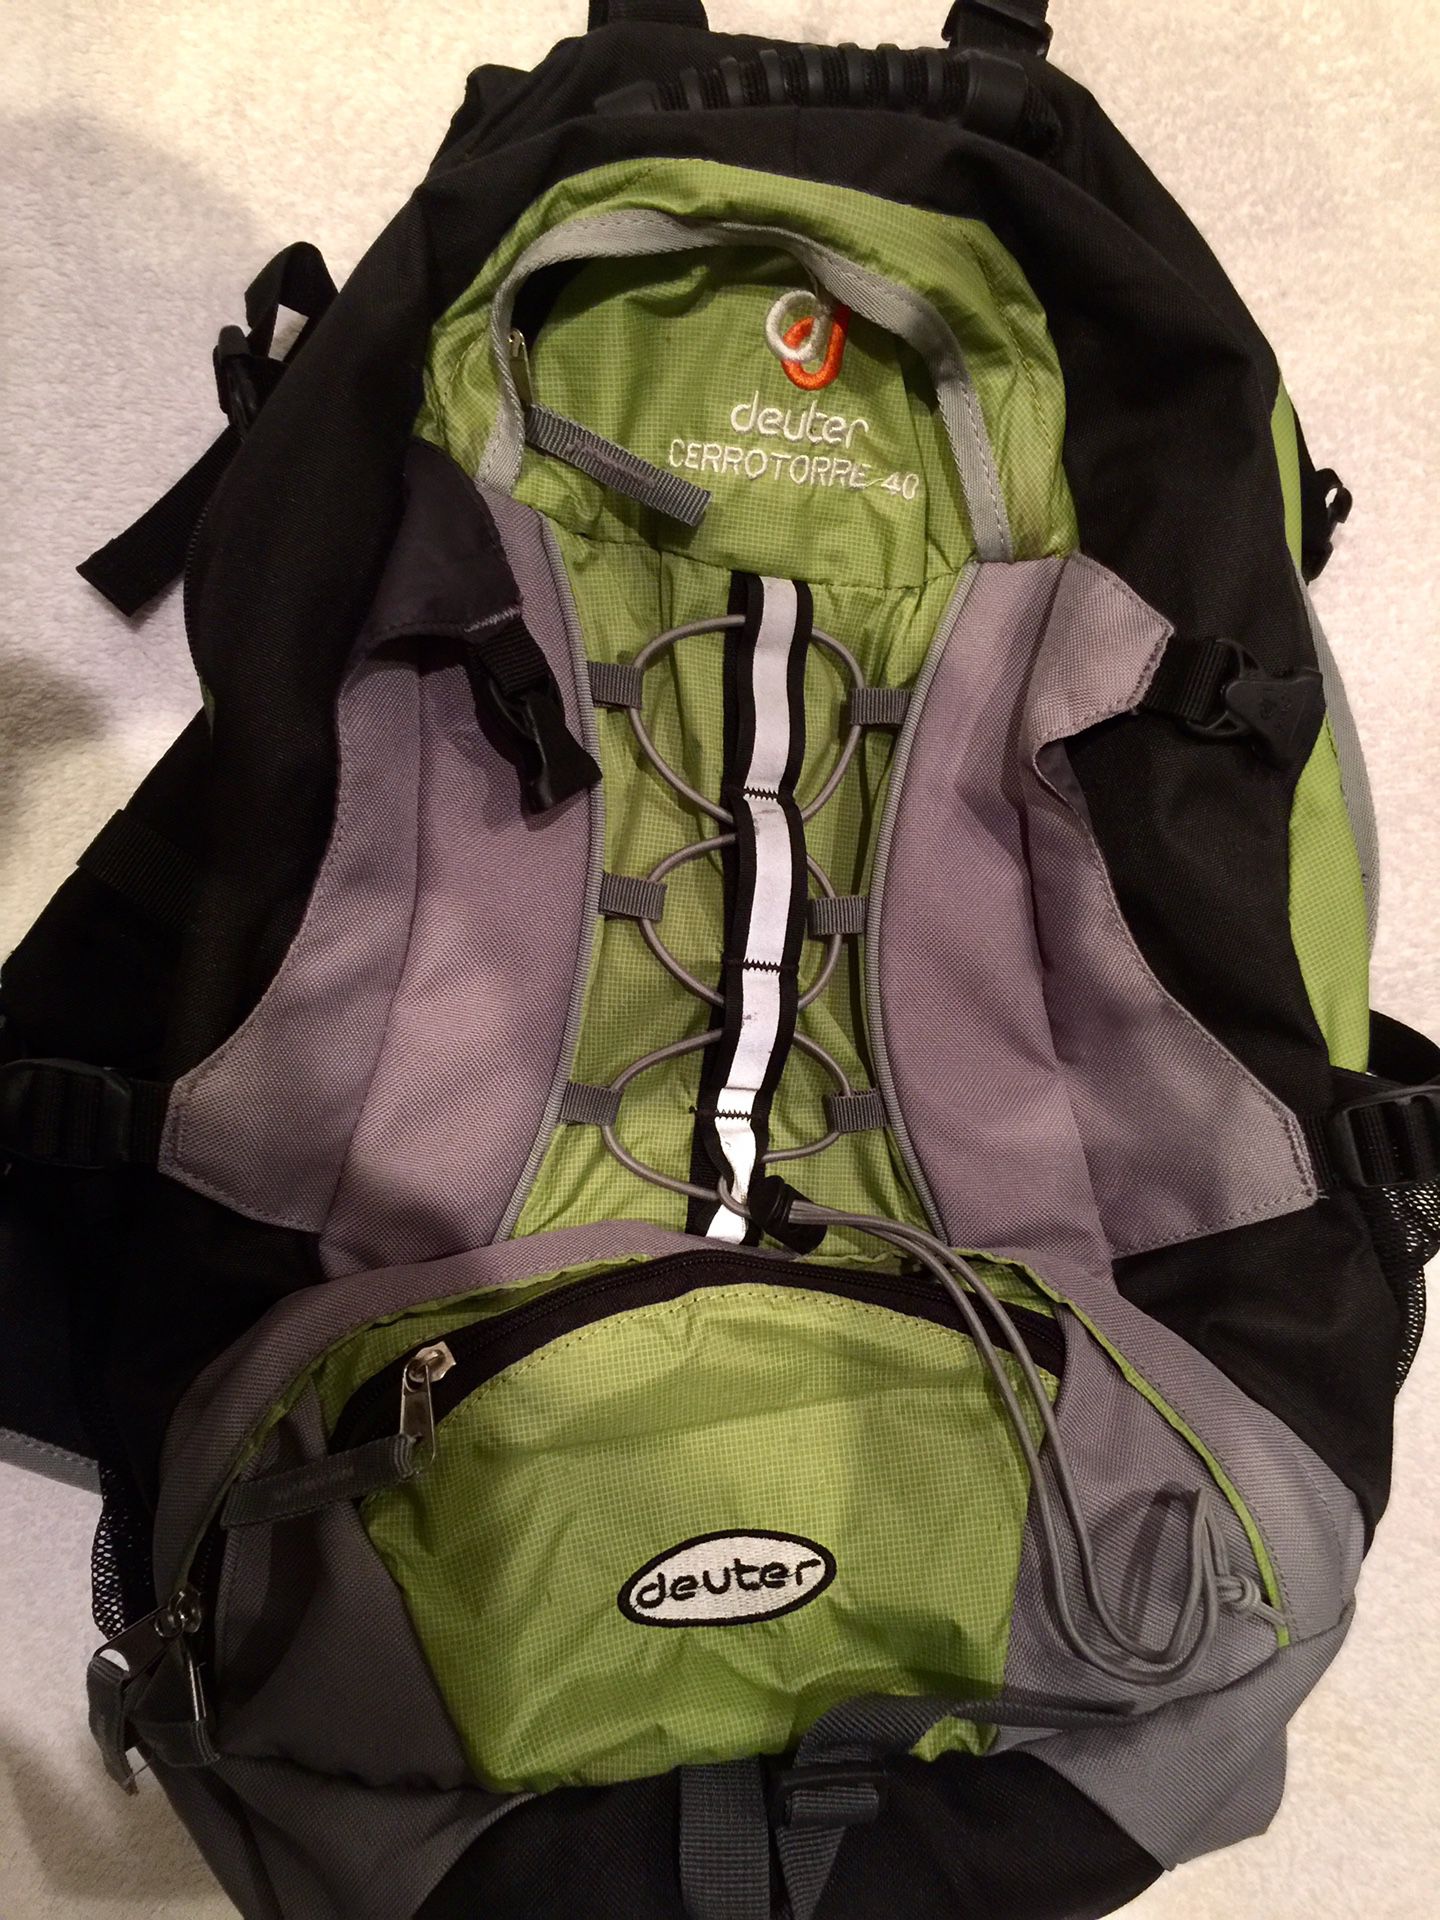 2 REI & DEUTER Hiking backpacks/daypacks for sale!